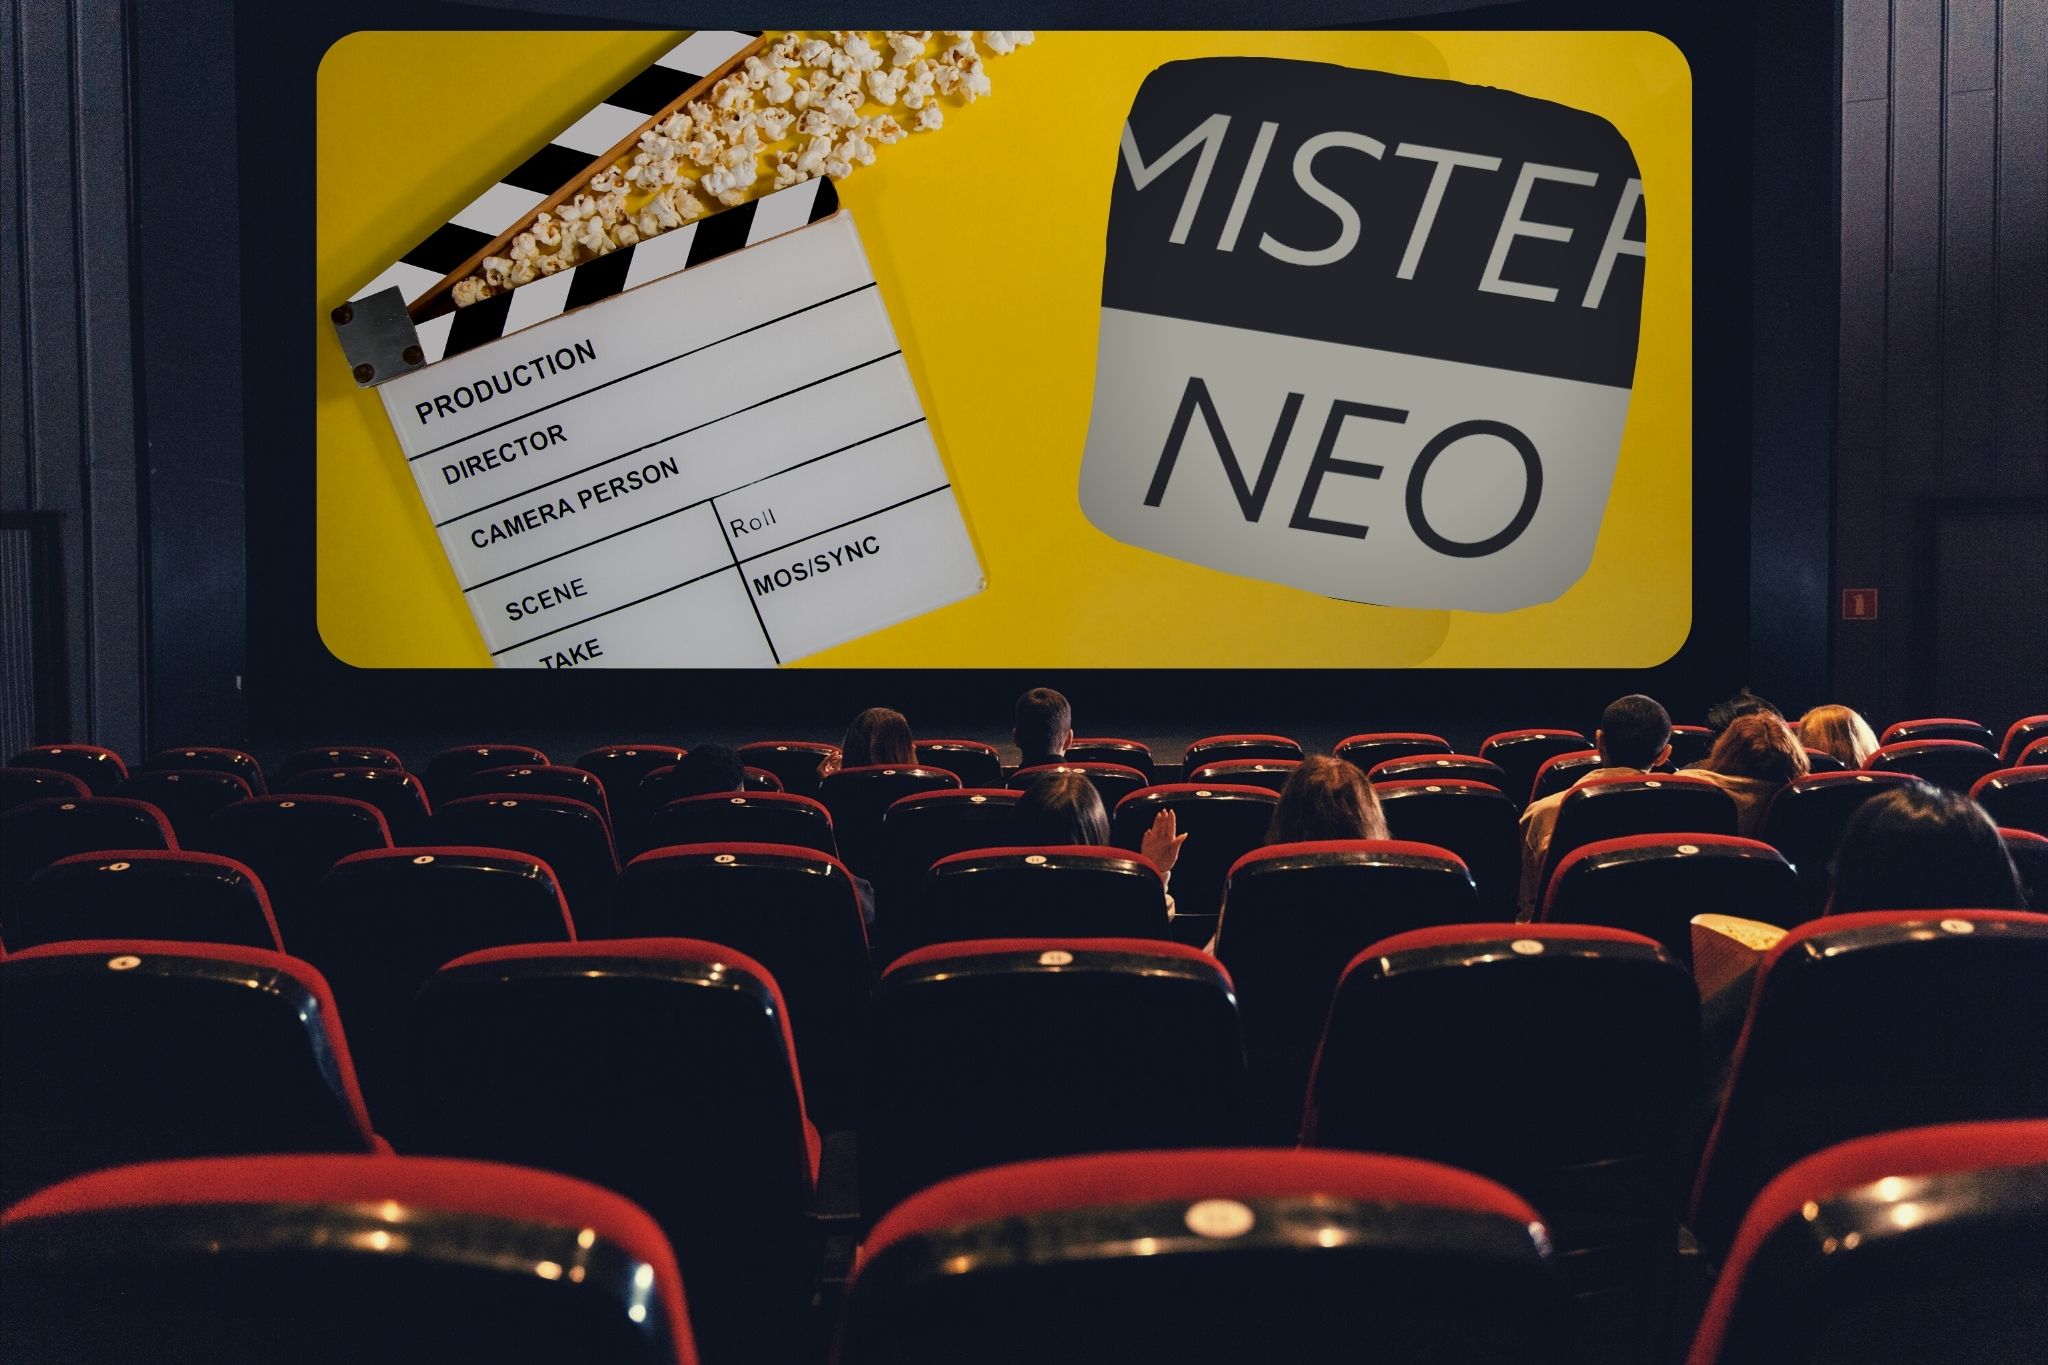 Kinosaal Mieten mit Mister Neo